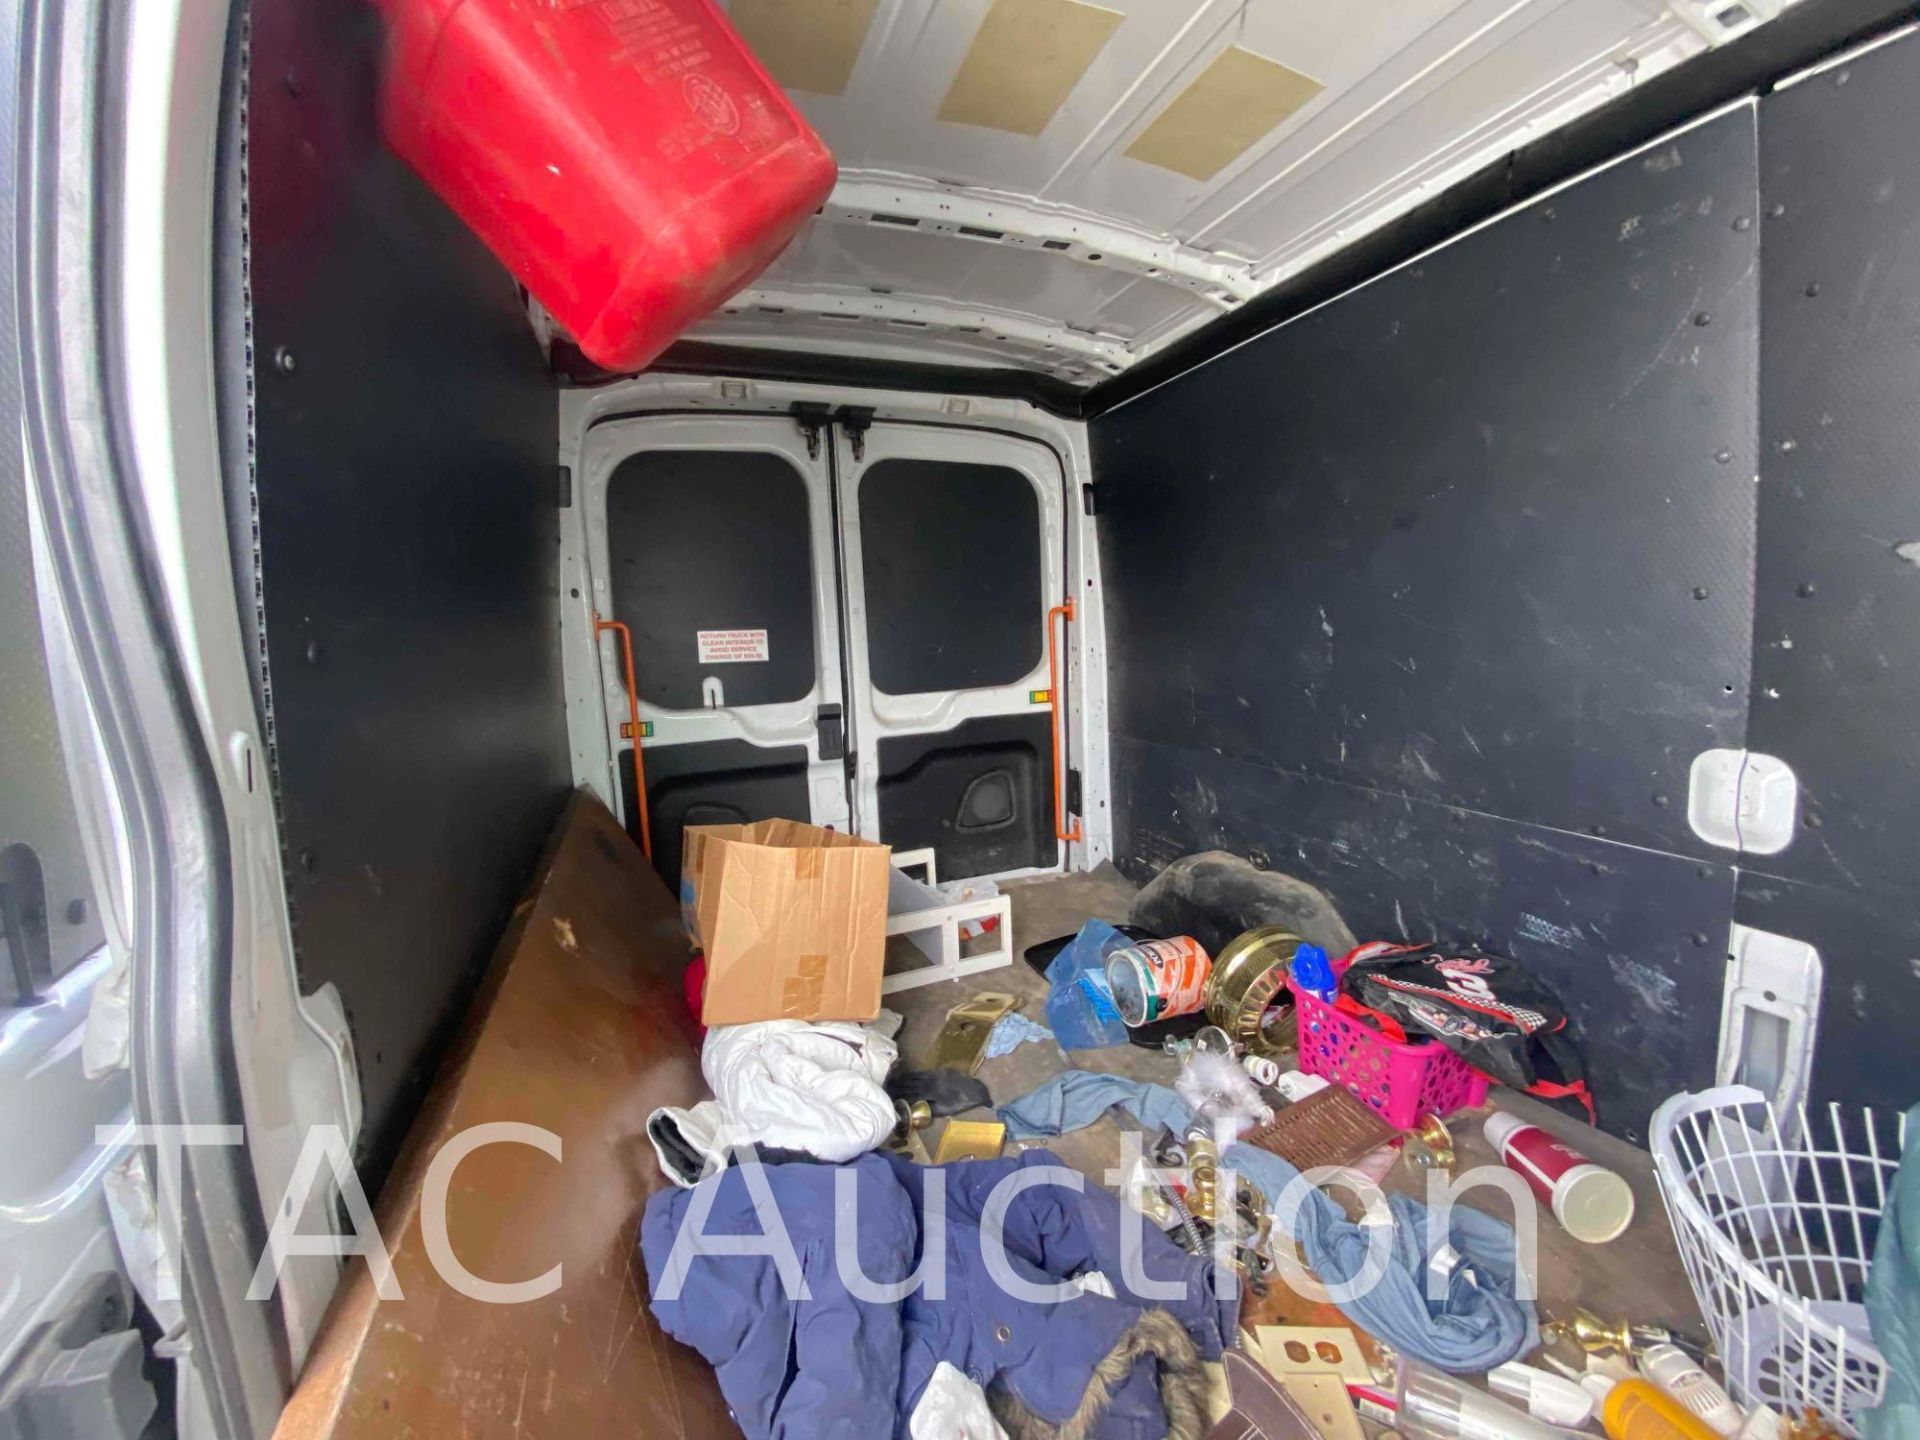 2019 Ford Transit 150 Cargo Van - Image 16 of 53